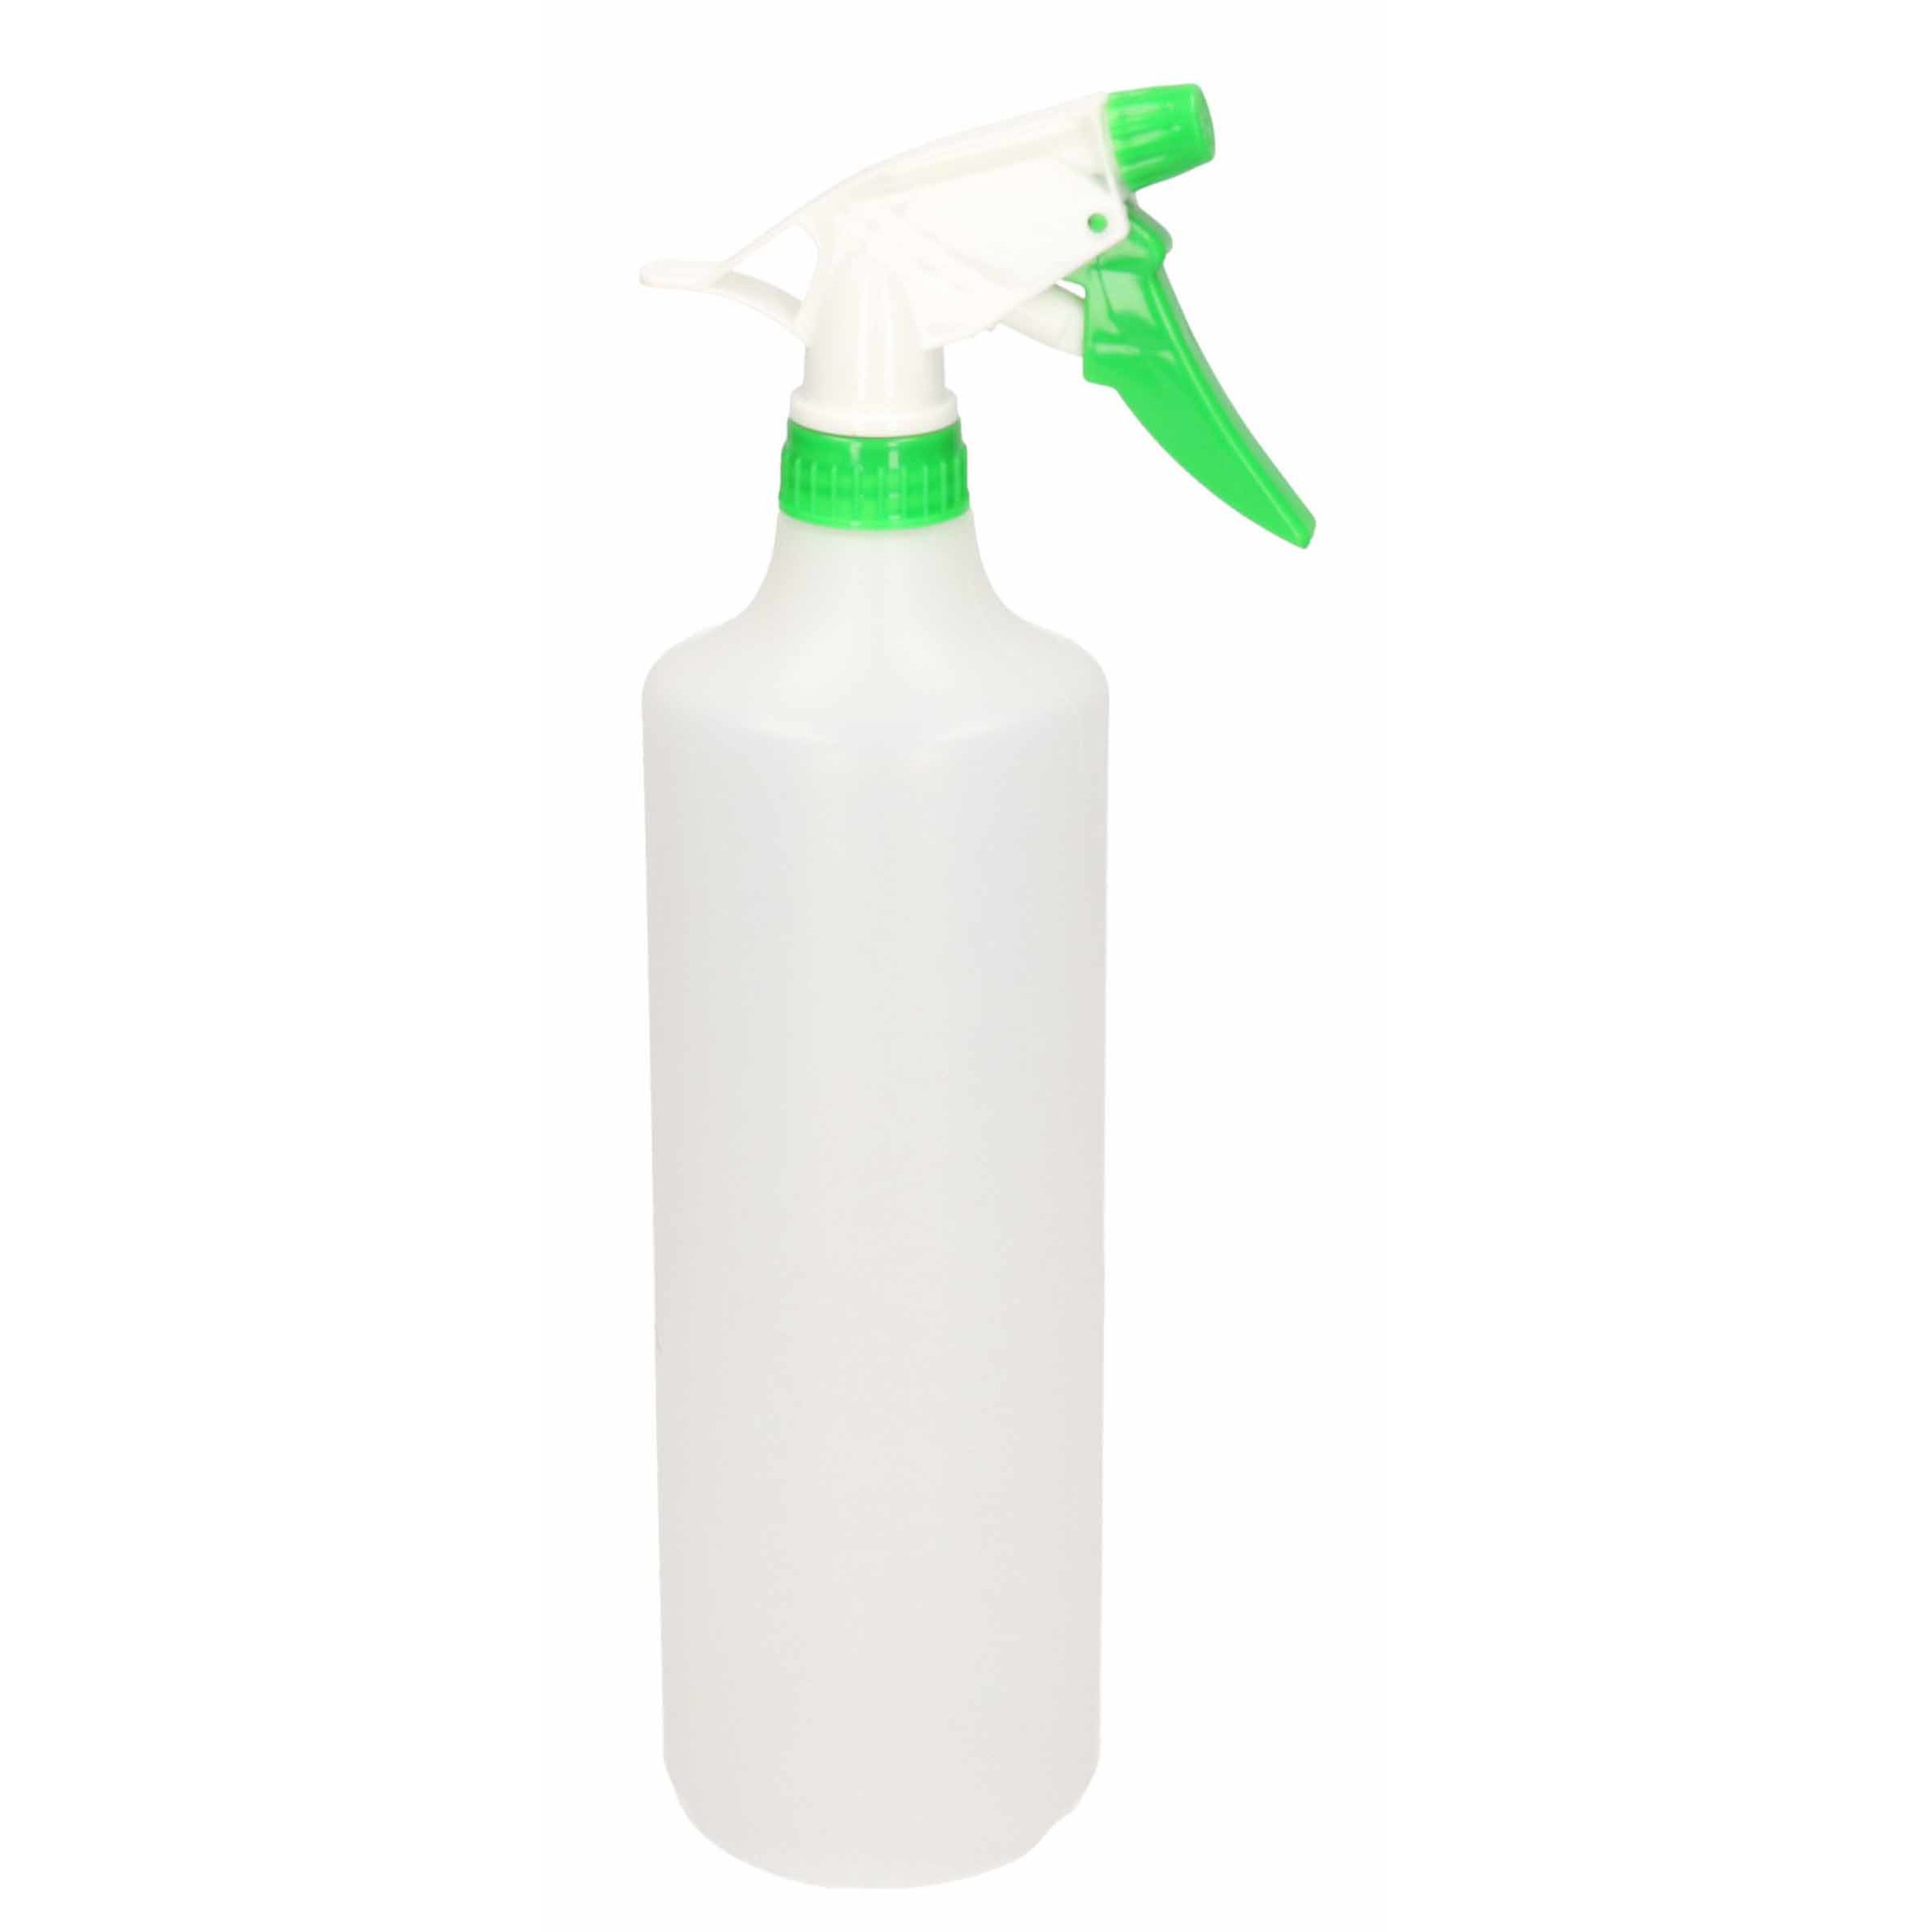 1x Waterverstuivers-plantenspuiten groen-witte spraykop 1 liter